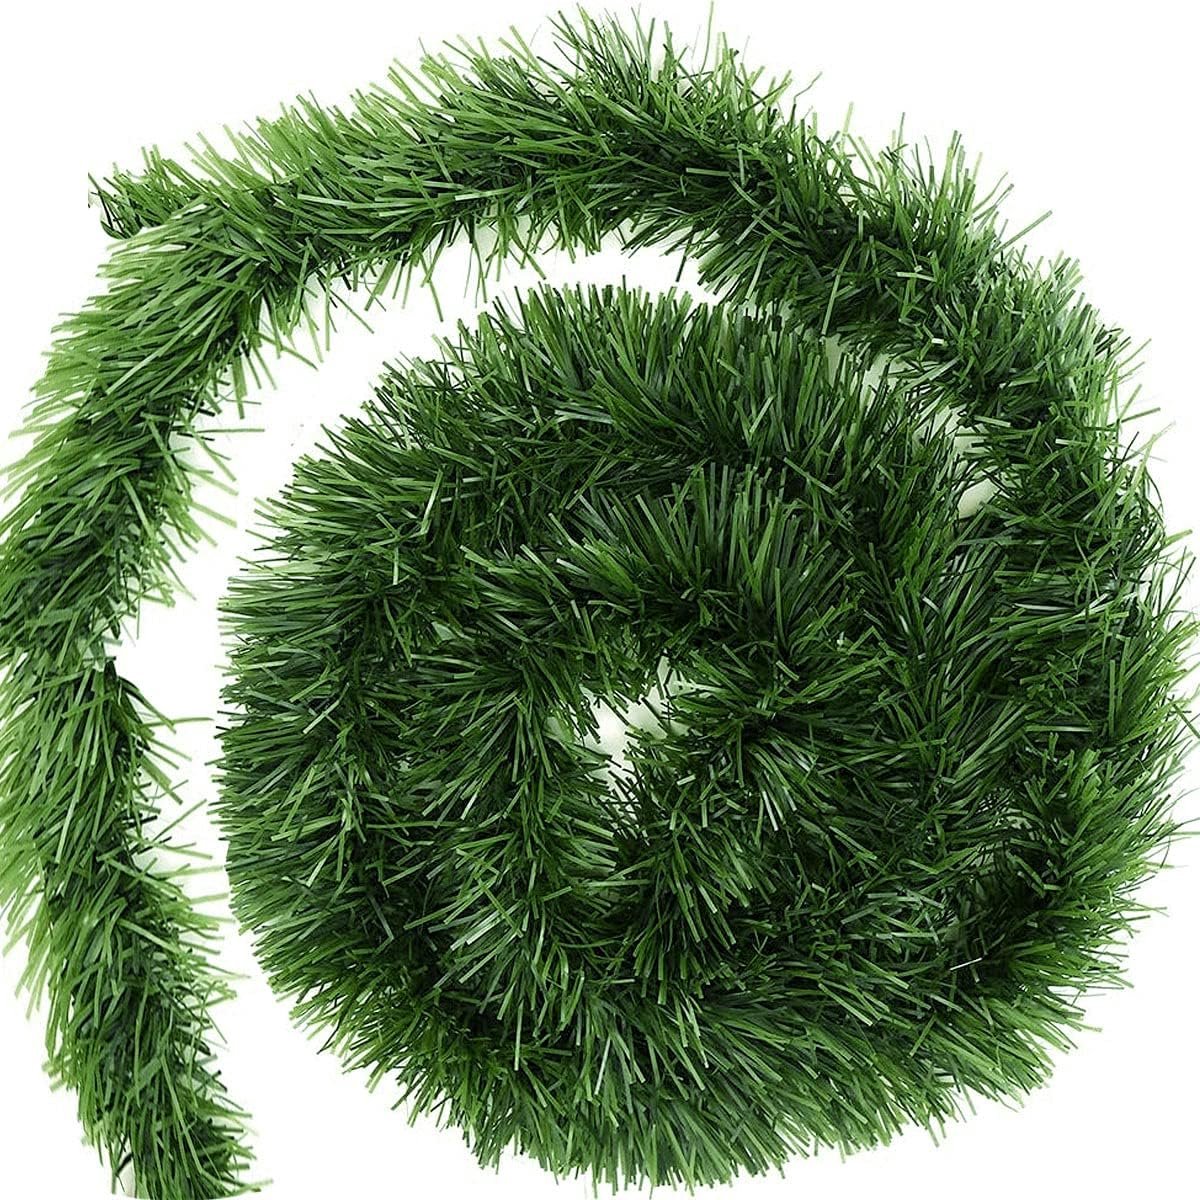 Kerstslinger Dennenguirlande Decoratie Kerstmis, Lange Groene Slinger voor Open Haard, Trappen – 5m